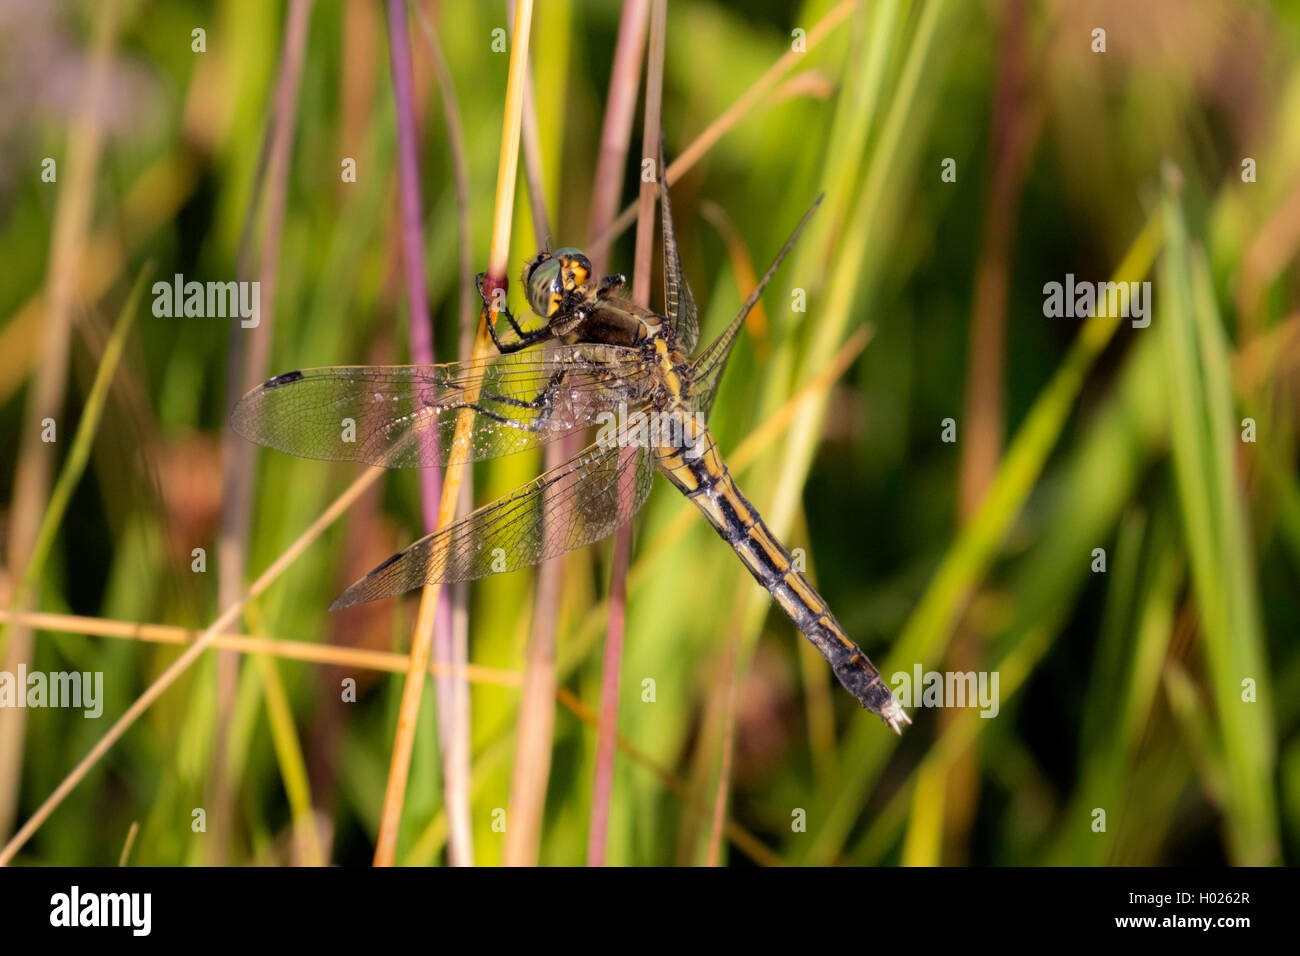 Zwei - Dragonfly gesichtet (Epitheca bimaculata, Libellula bimaculata), auf Gras Blade, Deutschland, Bayern Stockfoto